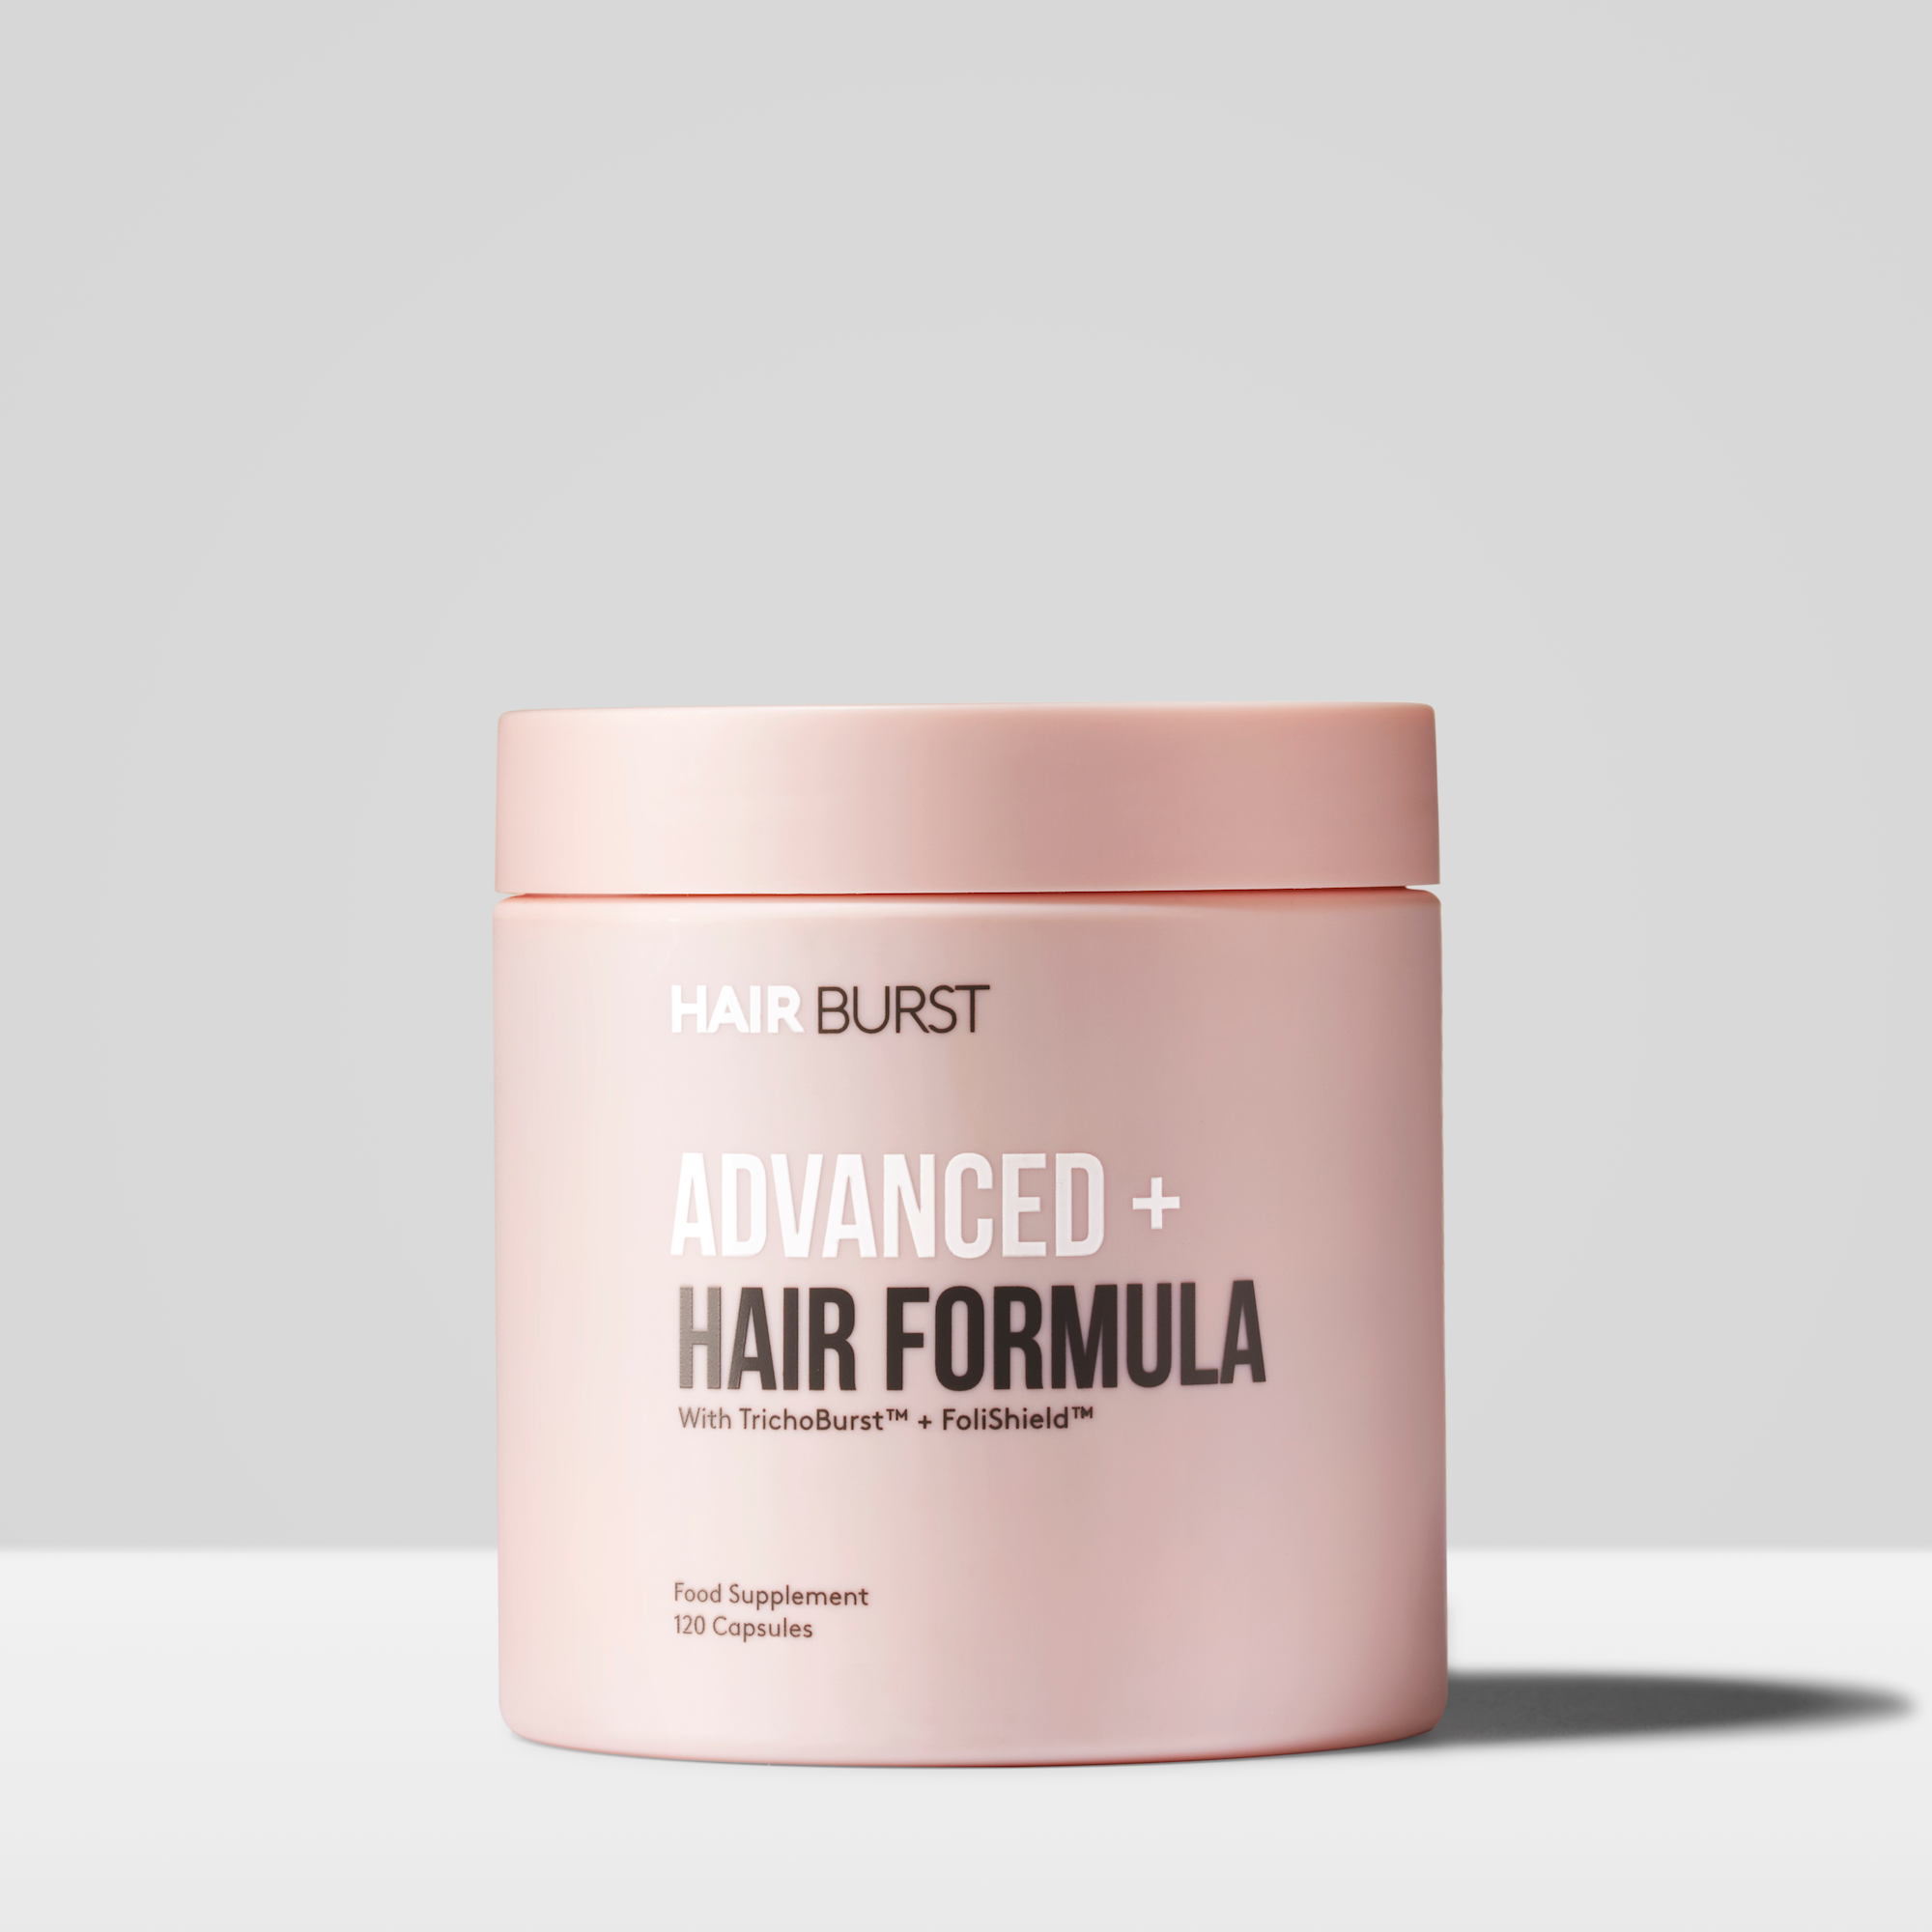 Formula per capelli Advanced+